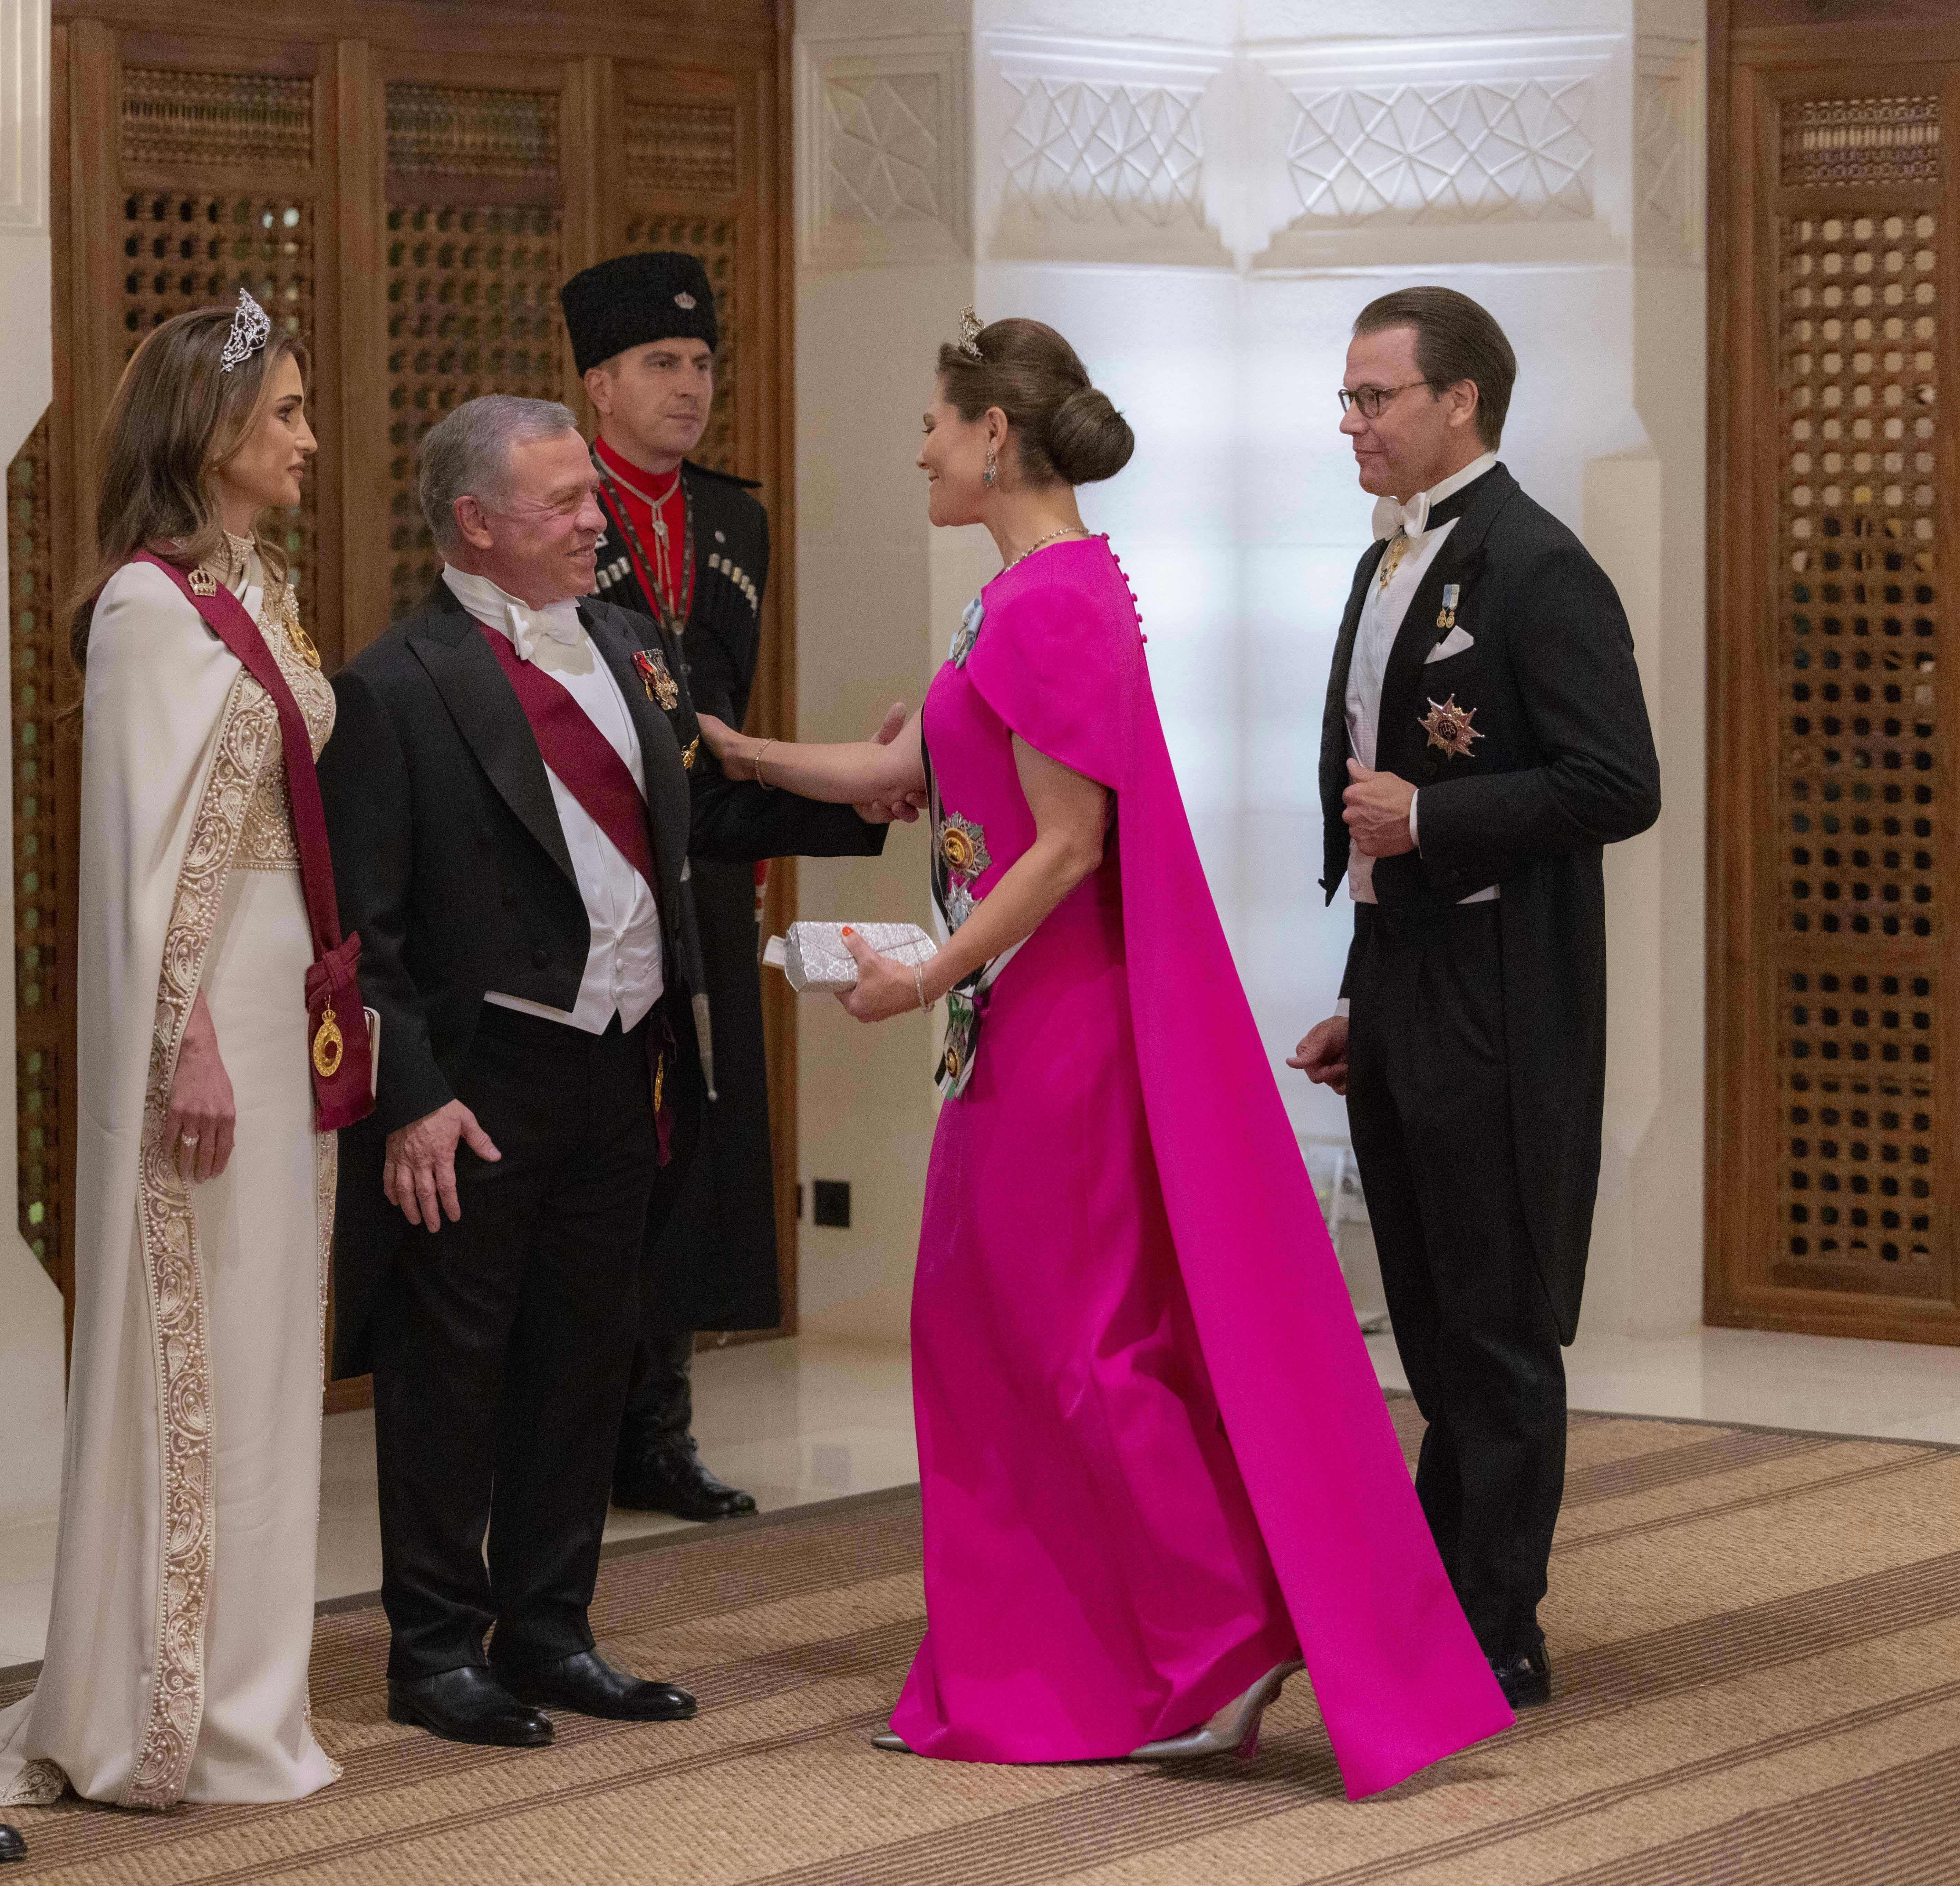 Kronprisesse Victoria og prins Daniel af Sverige hilser på Jordans kong Abdullah 2. og dronning Rania før aftenens bryllupsreception.&nbsp;
